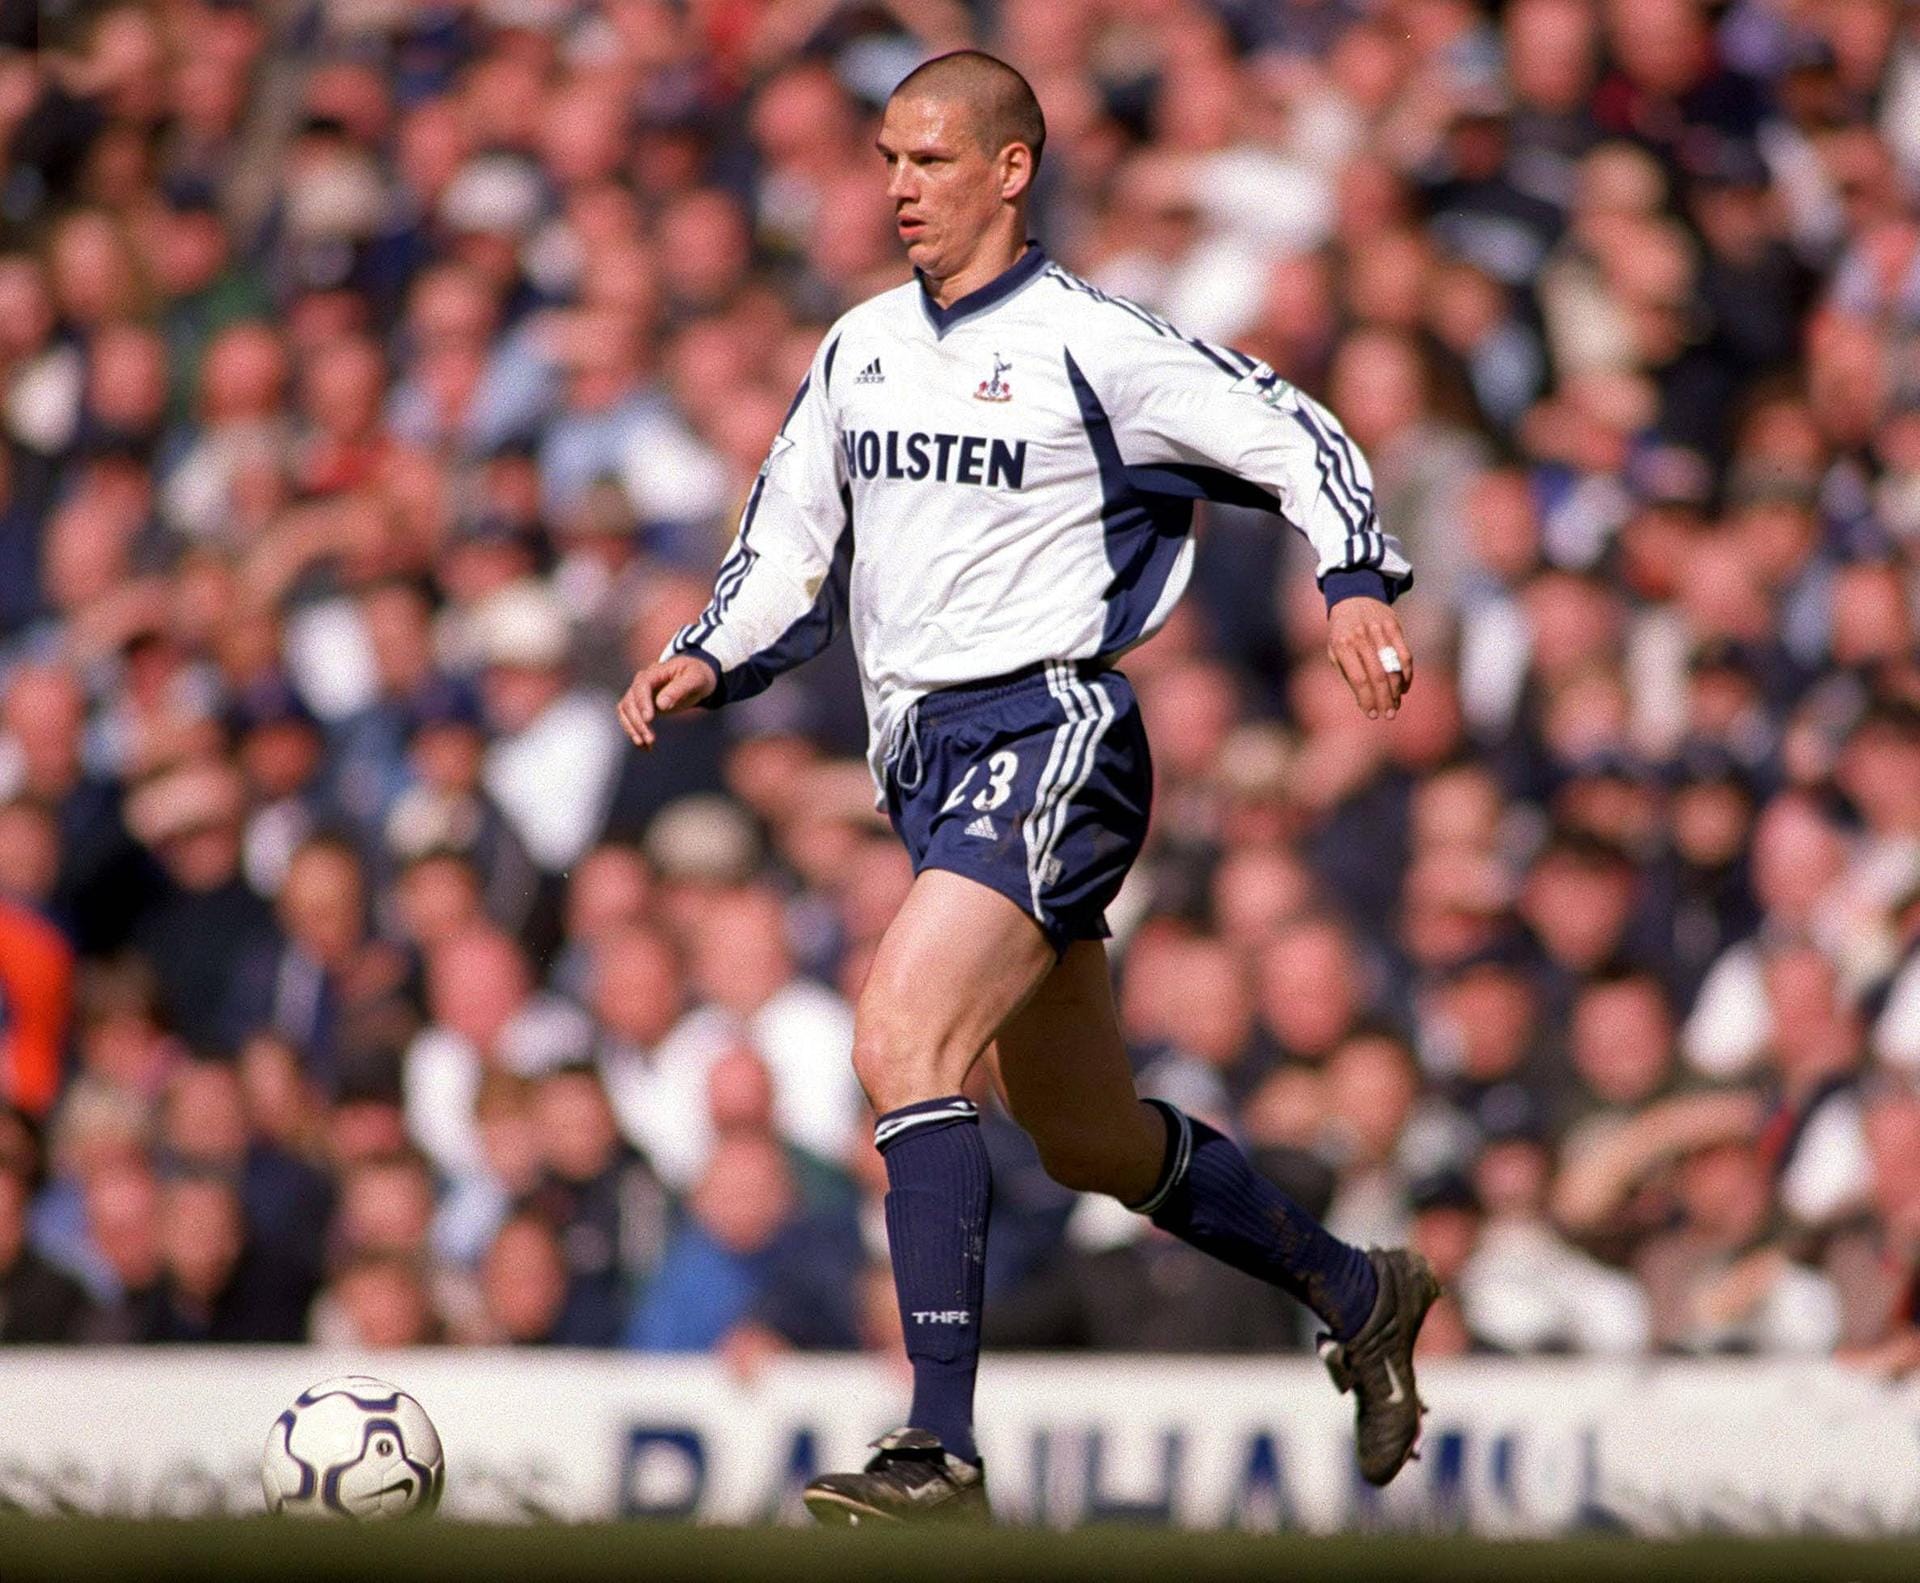 Christian Ziege: Als Linksverteidiger wurde er 1996 mit der deutschen Nationalmannschaft Europameister. Fünf Jahre seiner Karriere verbrachte Ziege aber in England: Von 1999 bis 2004 spielte er für Middlesbrough, Liverpool und Tottenham.